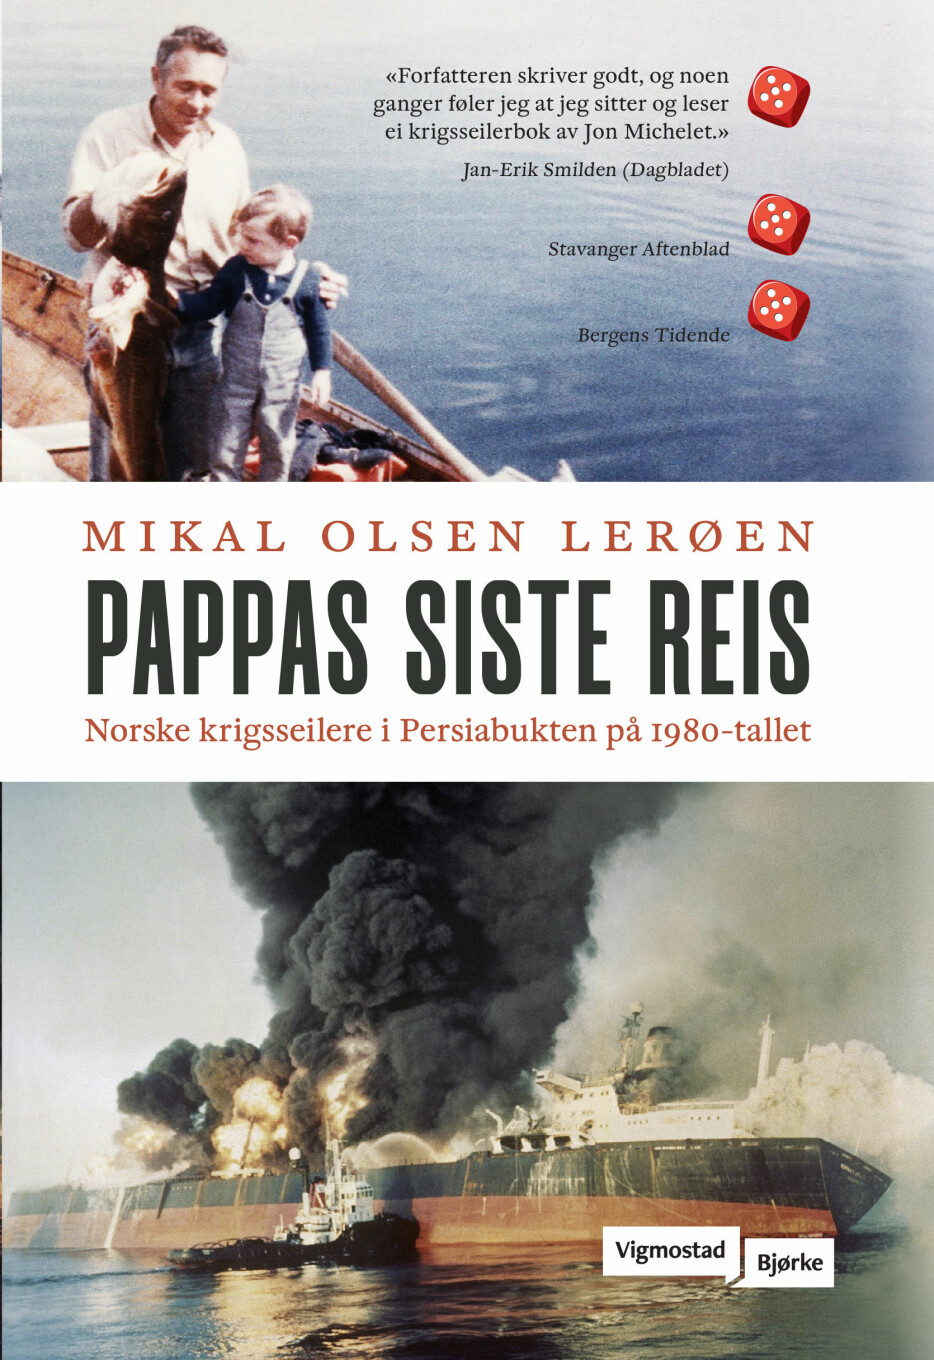 Mikal Olsen Lerøen vant prisen for boka «Pappas siste reis».